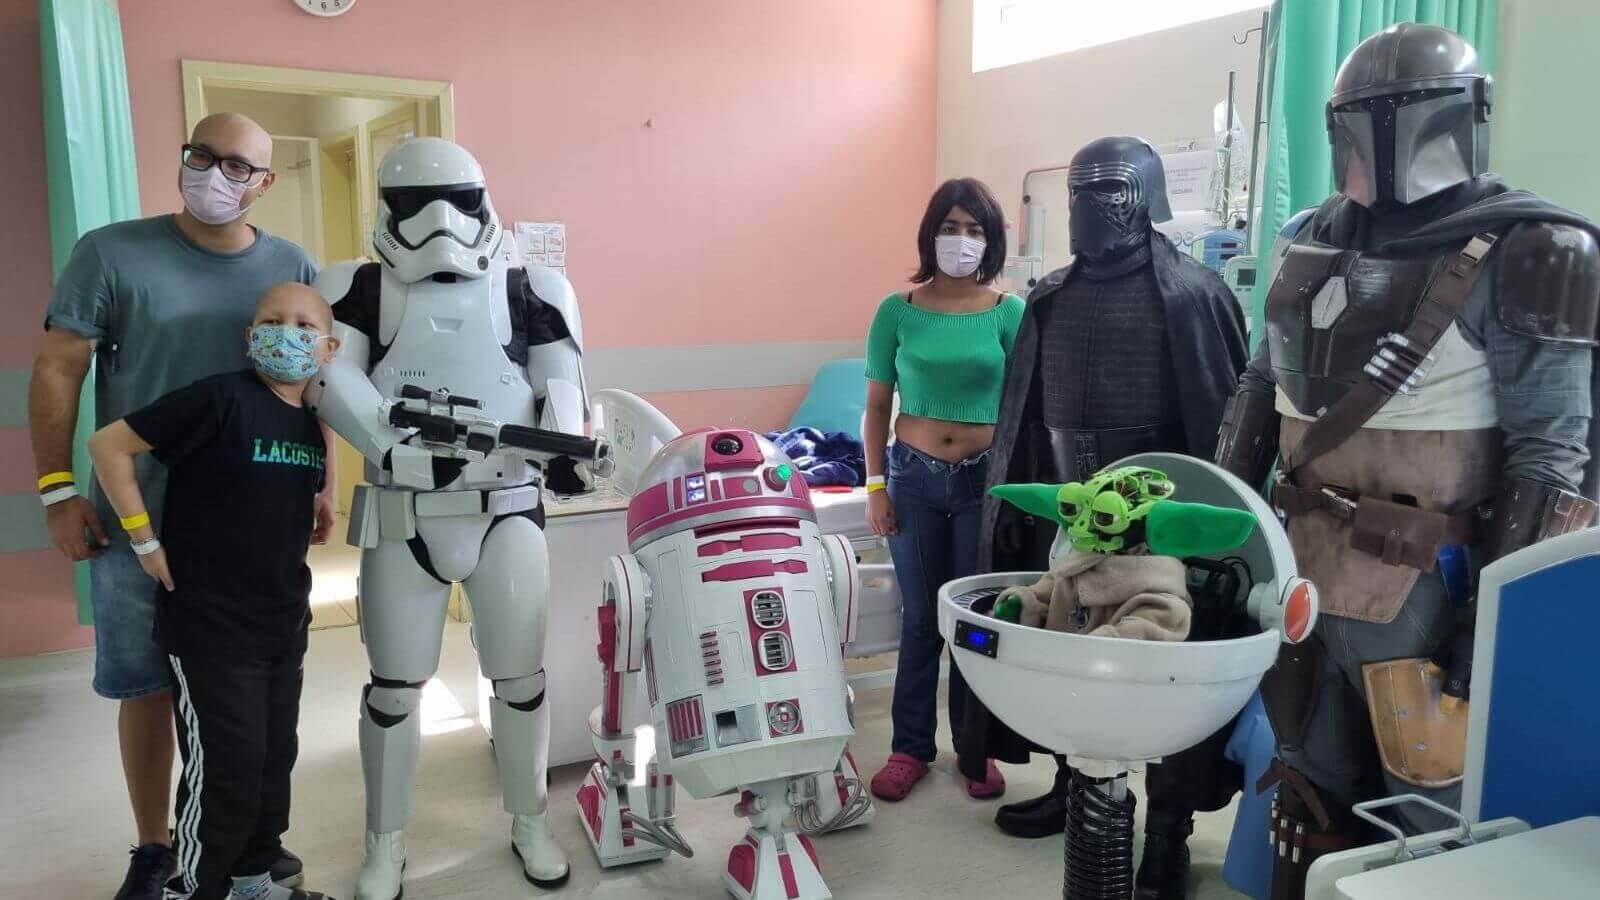 Pacientes do Grendacc Jundiaí recebem visita de personagens da saga Star Wars